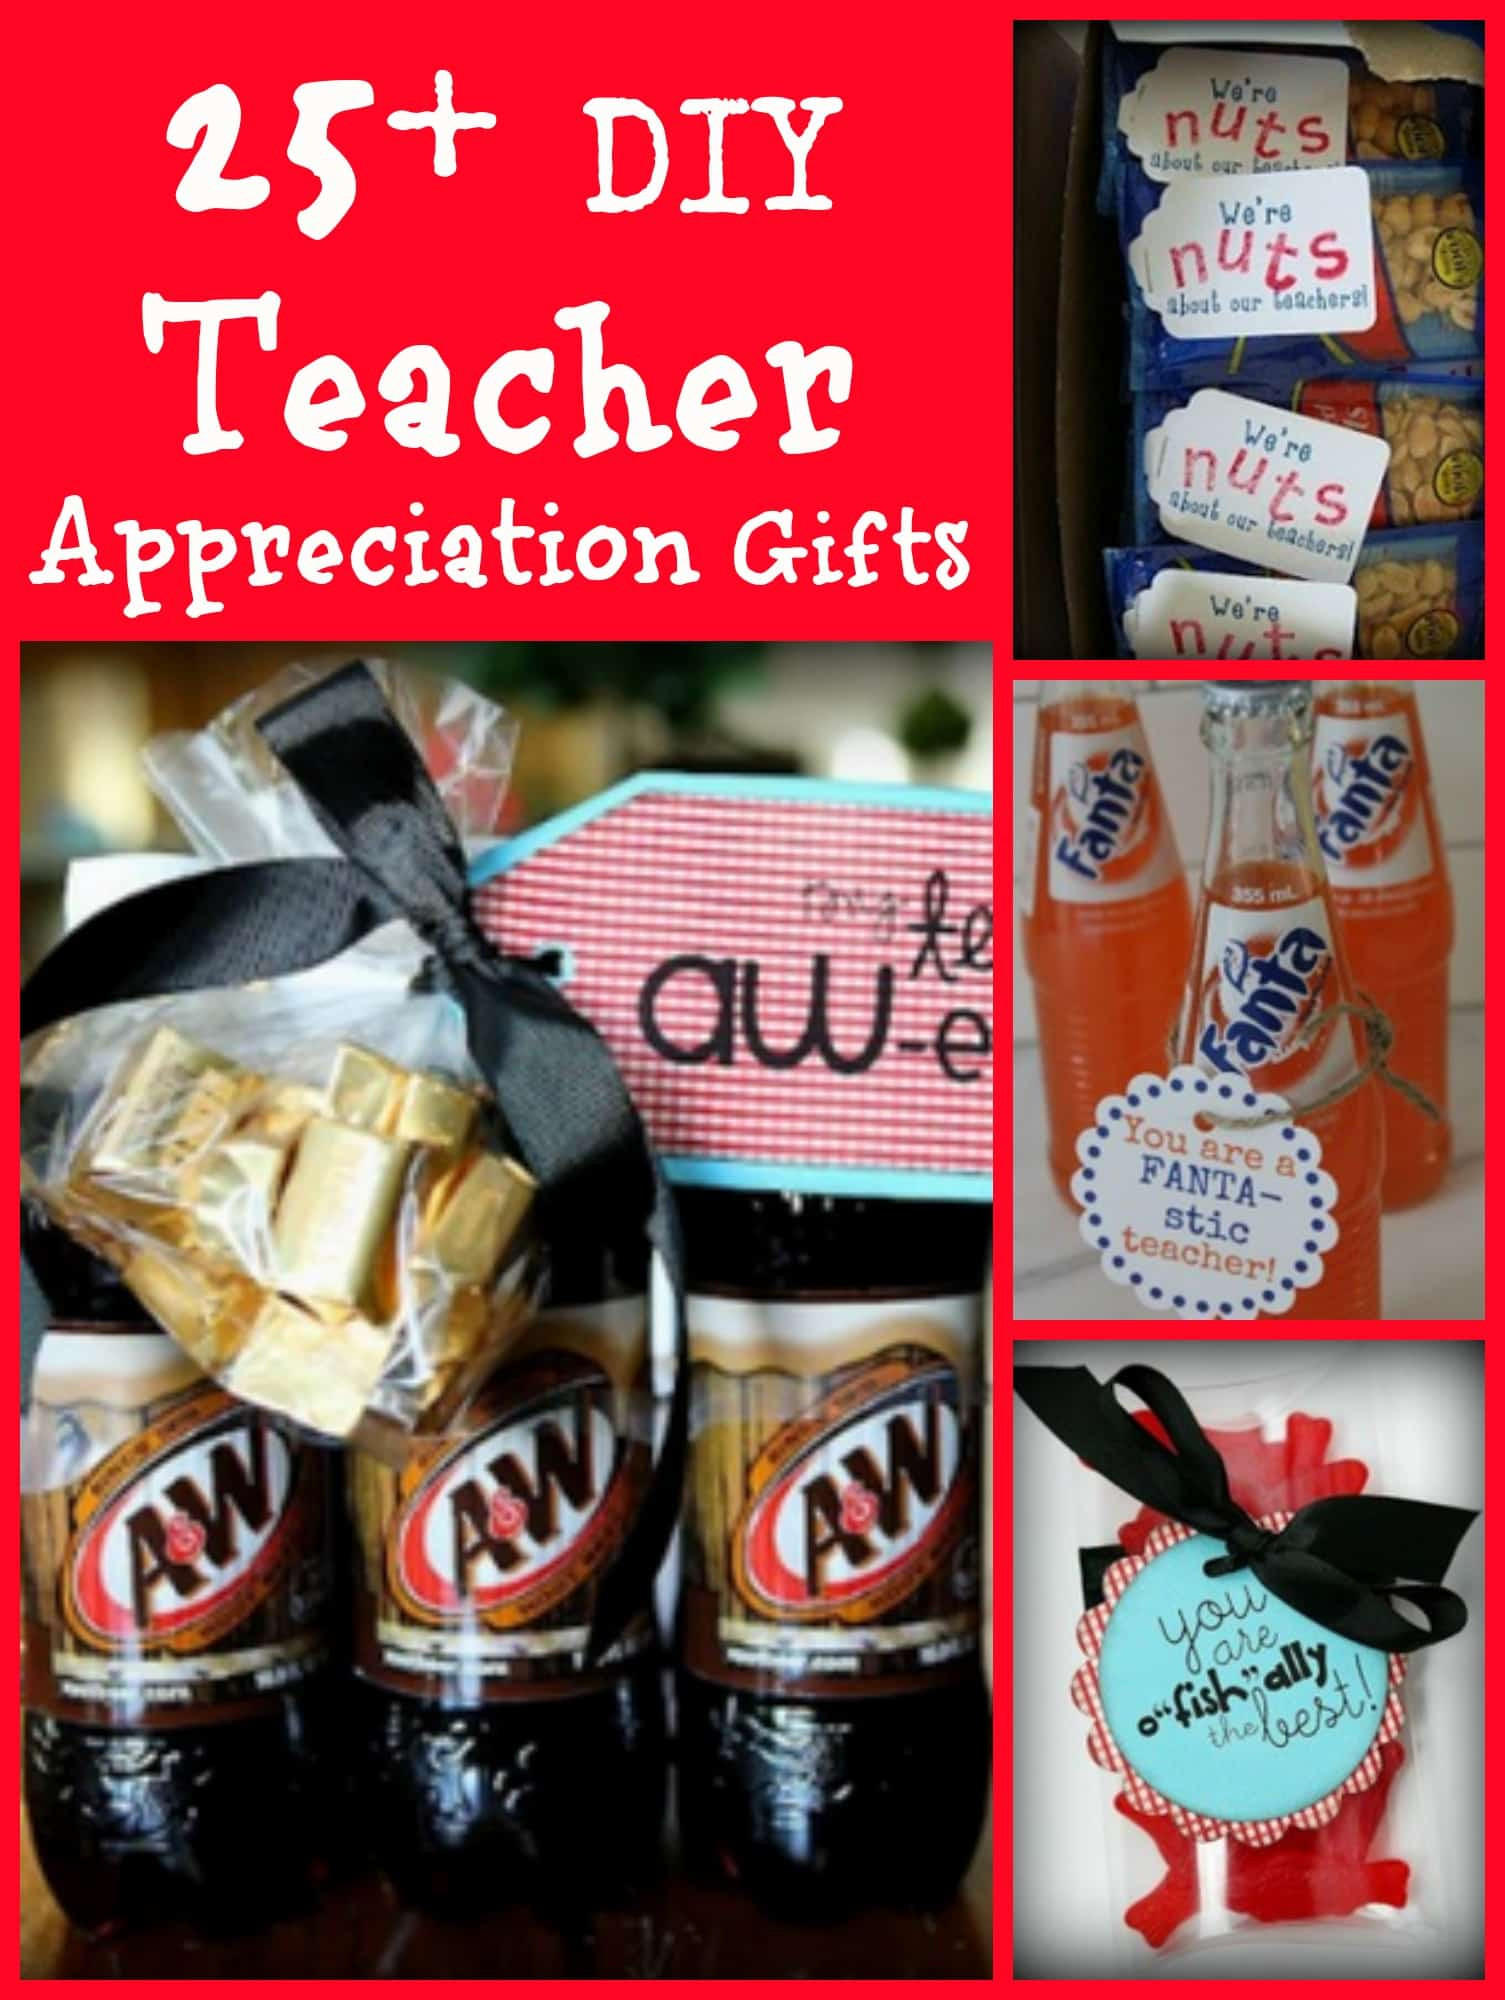 DIY Teacher Gifts Ideas
 25 Bud Friendly Homemade DIY Teacher Appreciation Gift